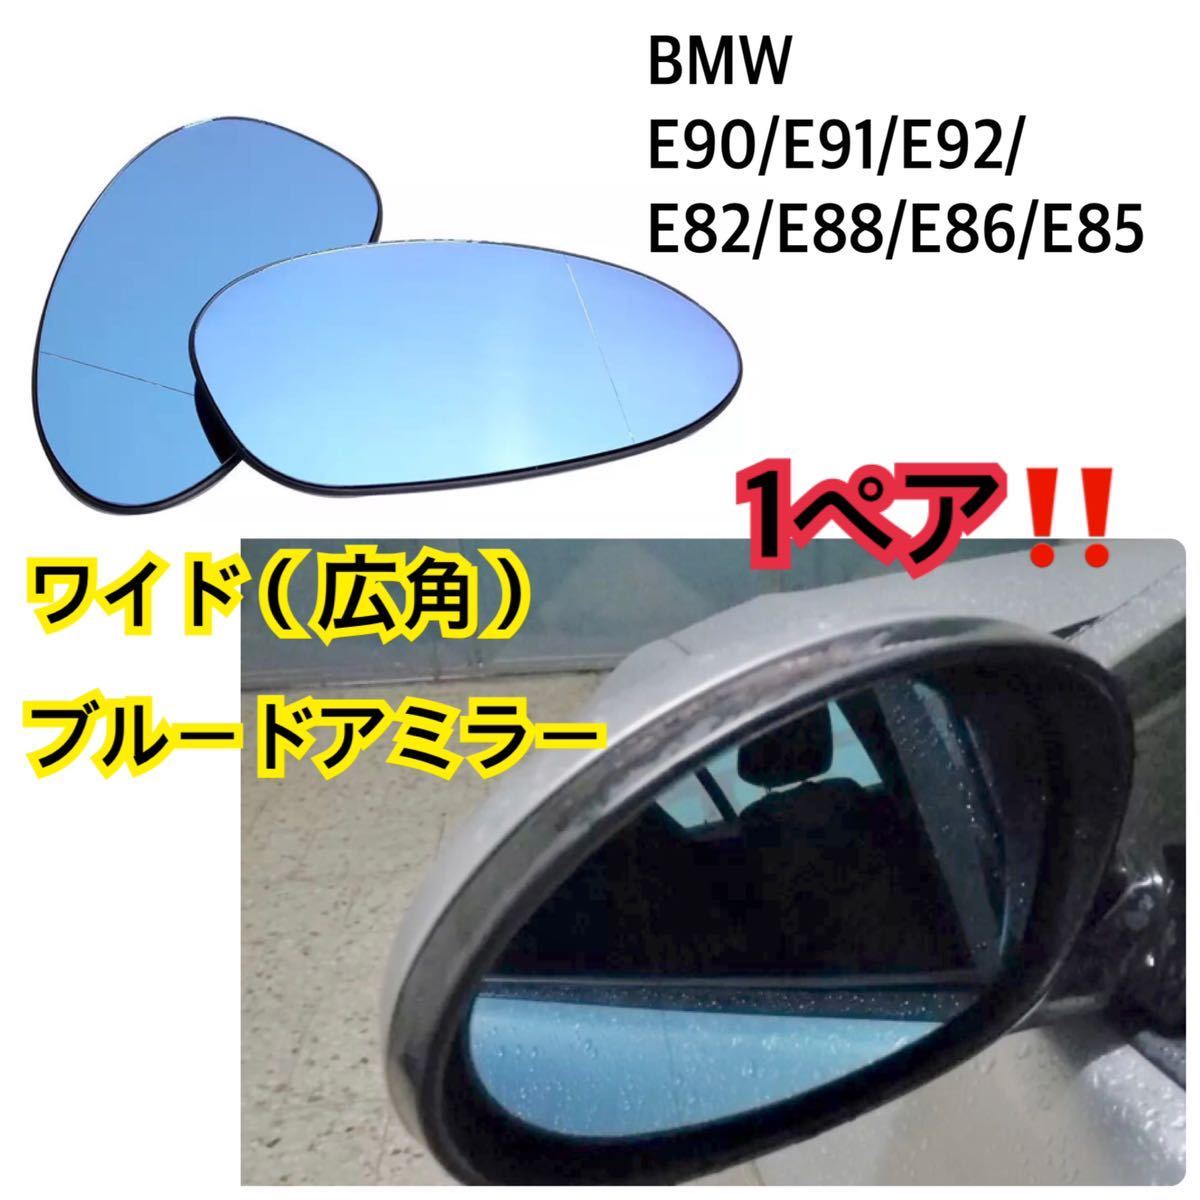 即納!! 送料込み♪ BMW E90/E91/E92/E82/E88/E86/E85/320i /323i/325i/335i ブルー ドアミラー ガラス ワイド(広角) レンズ 1ペア_画像1